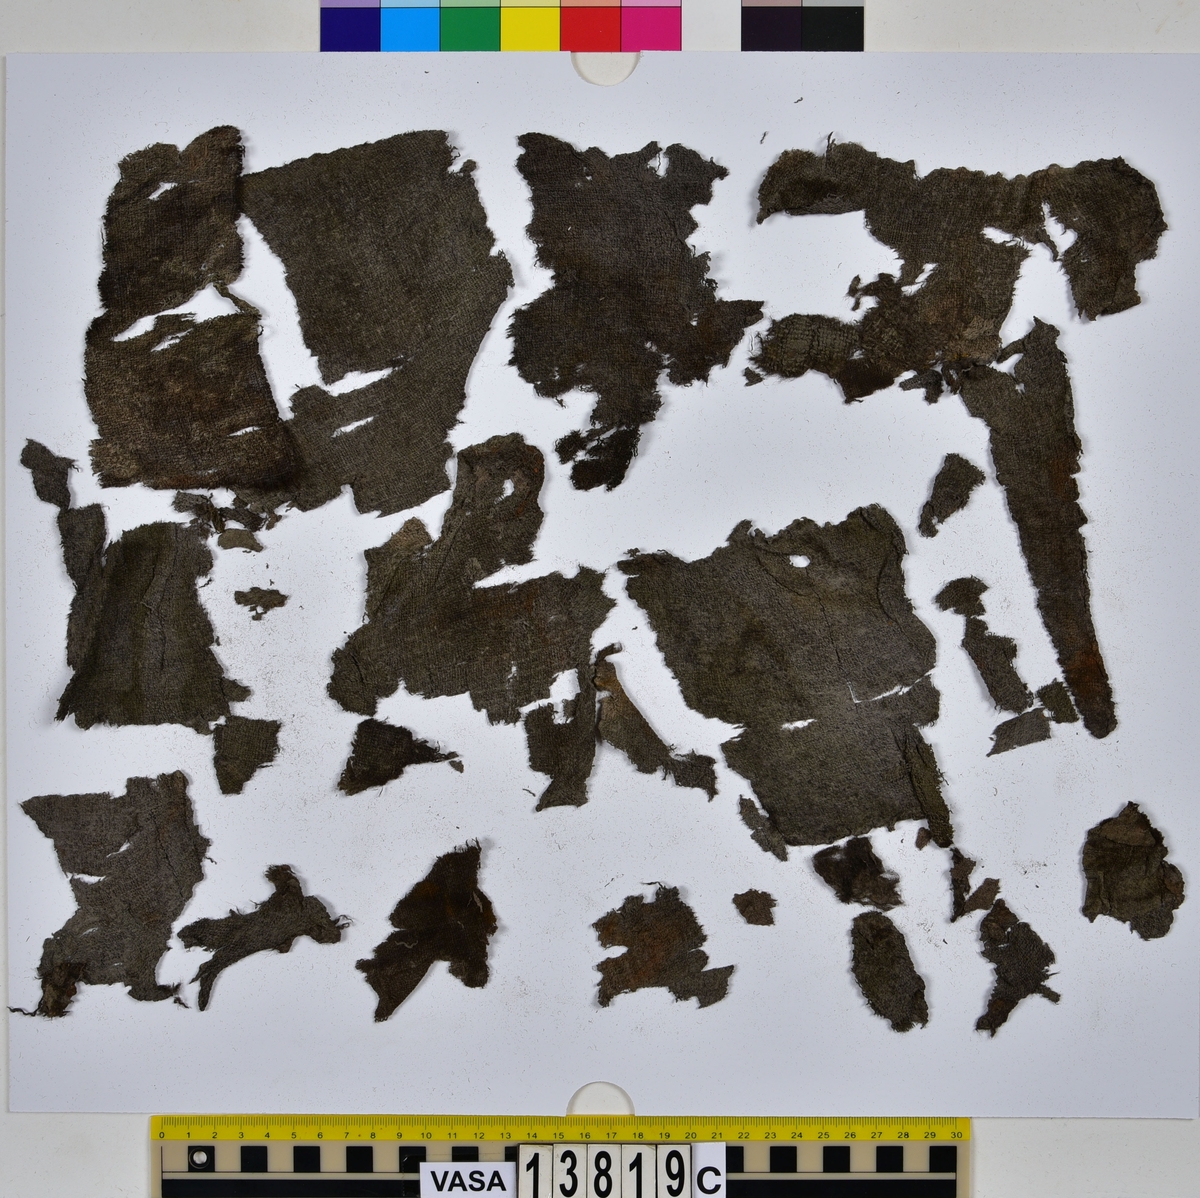 Textilfragment, byxa.
125 fragment uppdelade på fyndnummer 13819a-d.
Fnr 13819a består av 44 fragment av ull vävt i tuskaft och valkat på ena sidan. En del av fragmenten har originalkanter med sömmar och fållar.
Fnr 13819b består av 35 fragment av ull vävt i tuskaft. En del av fragmenten har originalkanter med sömmar.
Fnr 13819c består av 40 fragment av ull vävt i tuskaft. En del av fragmenten har originalkanter med sömmar. Fragmenten är mycket sköra.
Fnr 13819d består av 6 fragment mönstervävt band av ull.